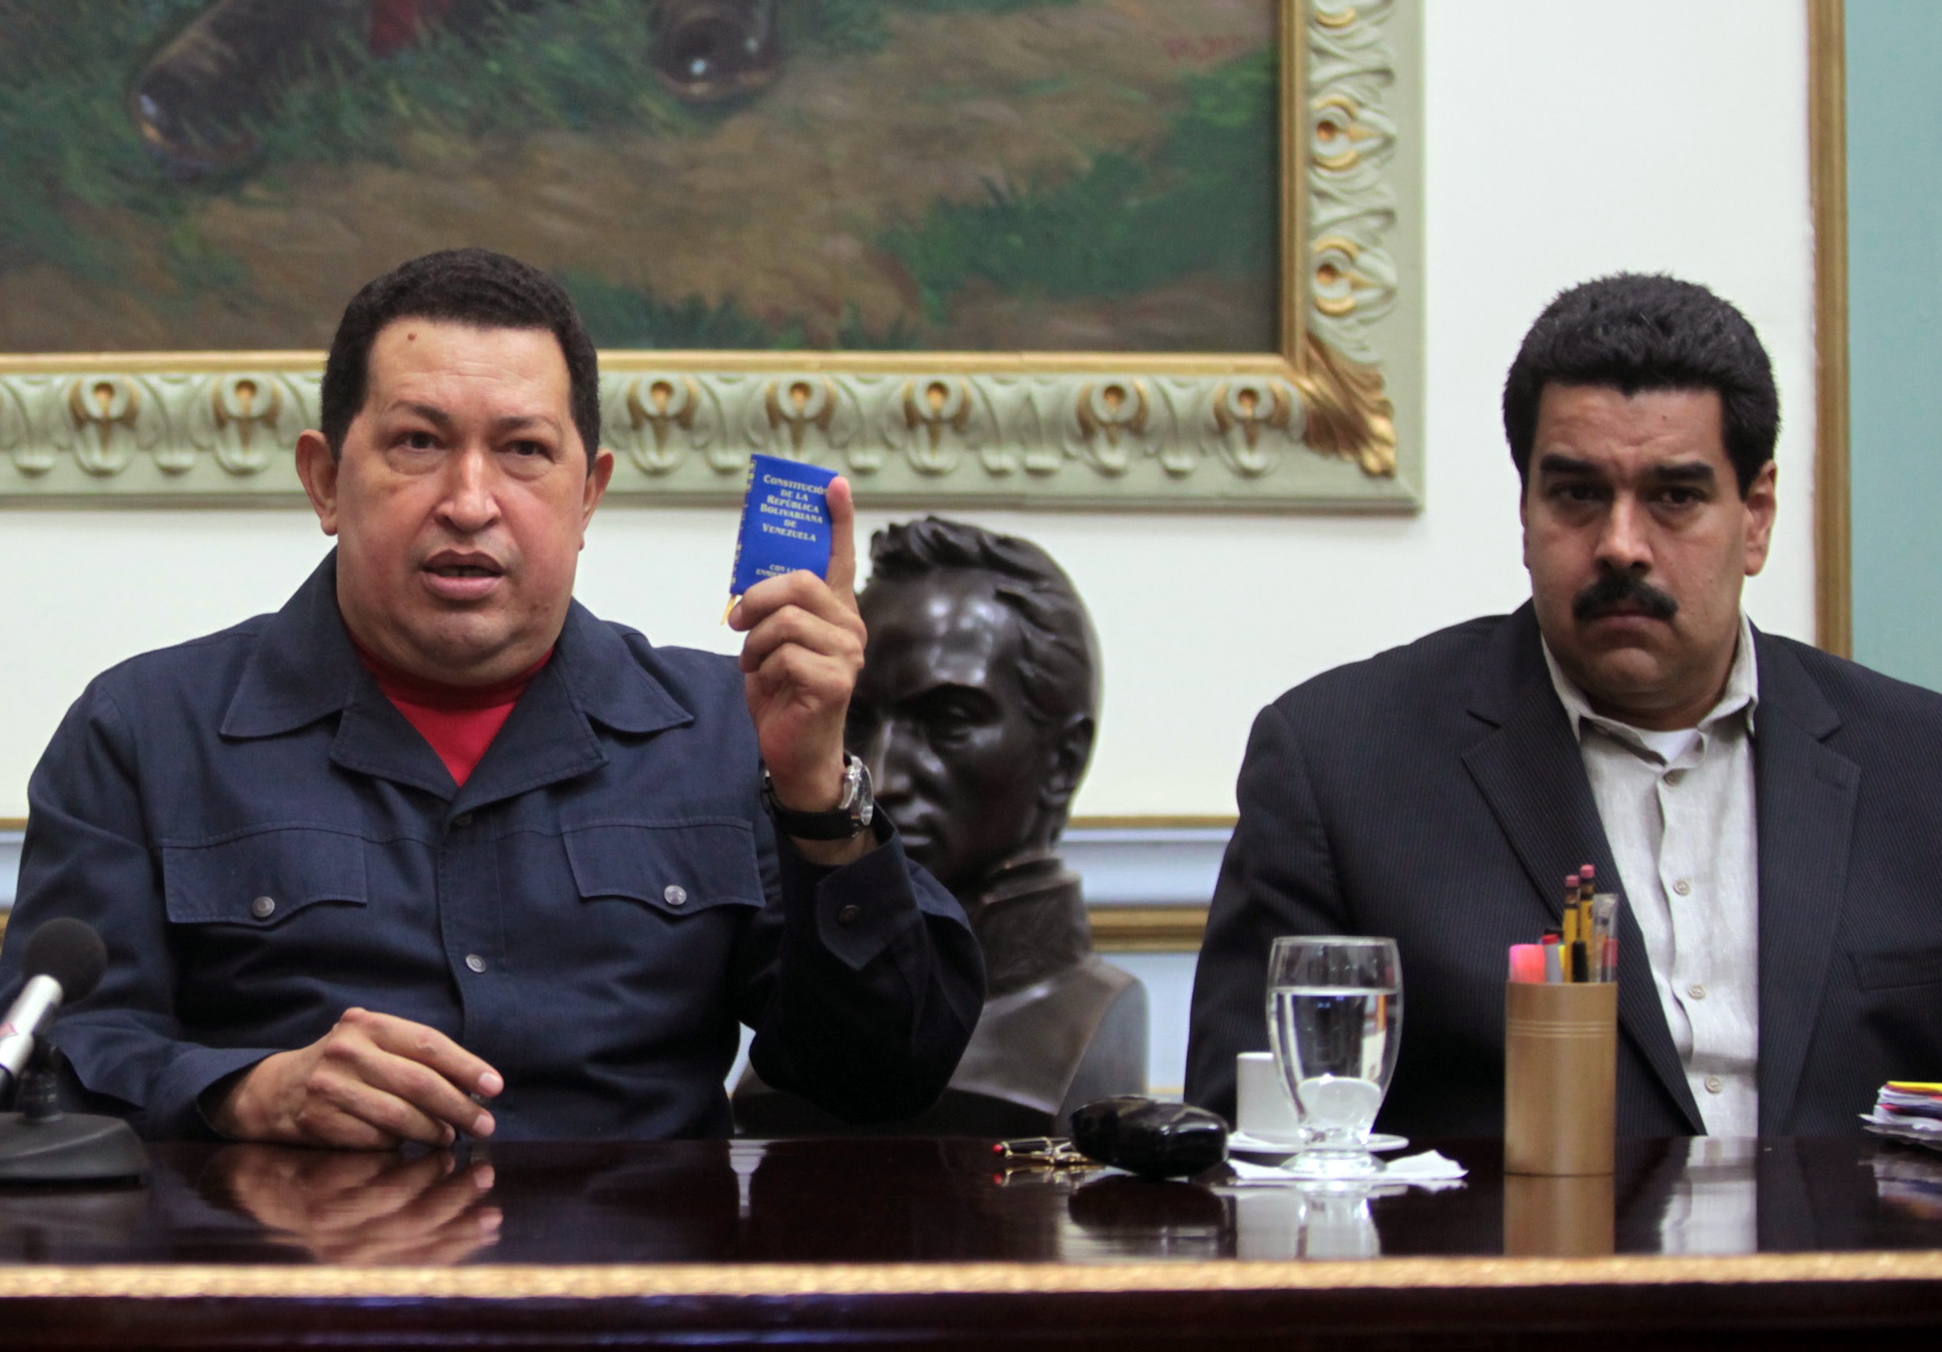 Silencio acerca de Chávez generaría rumores